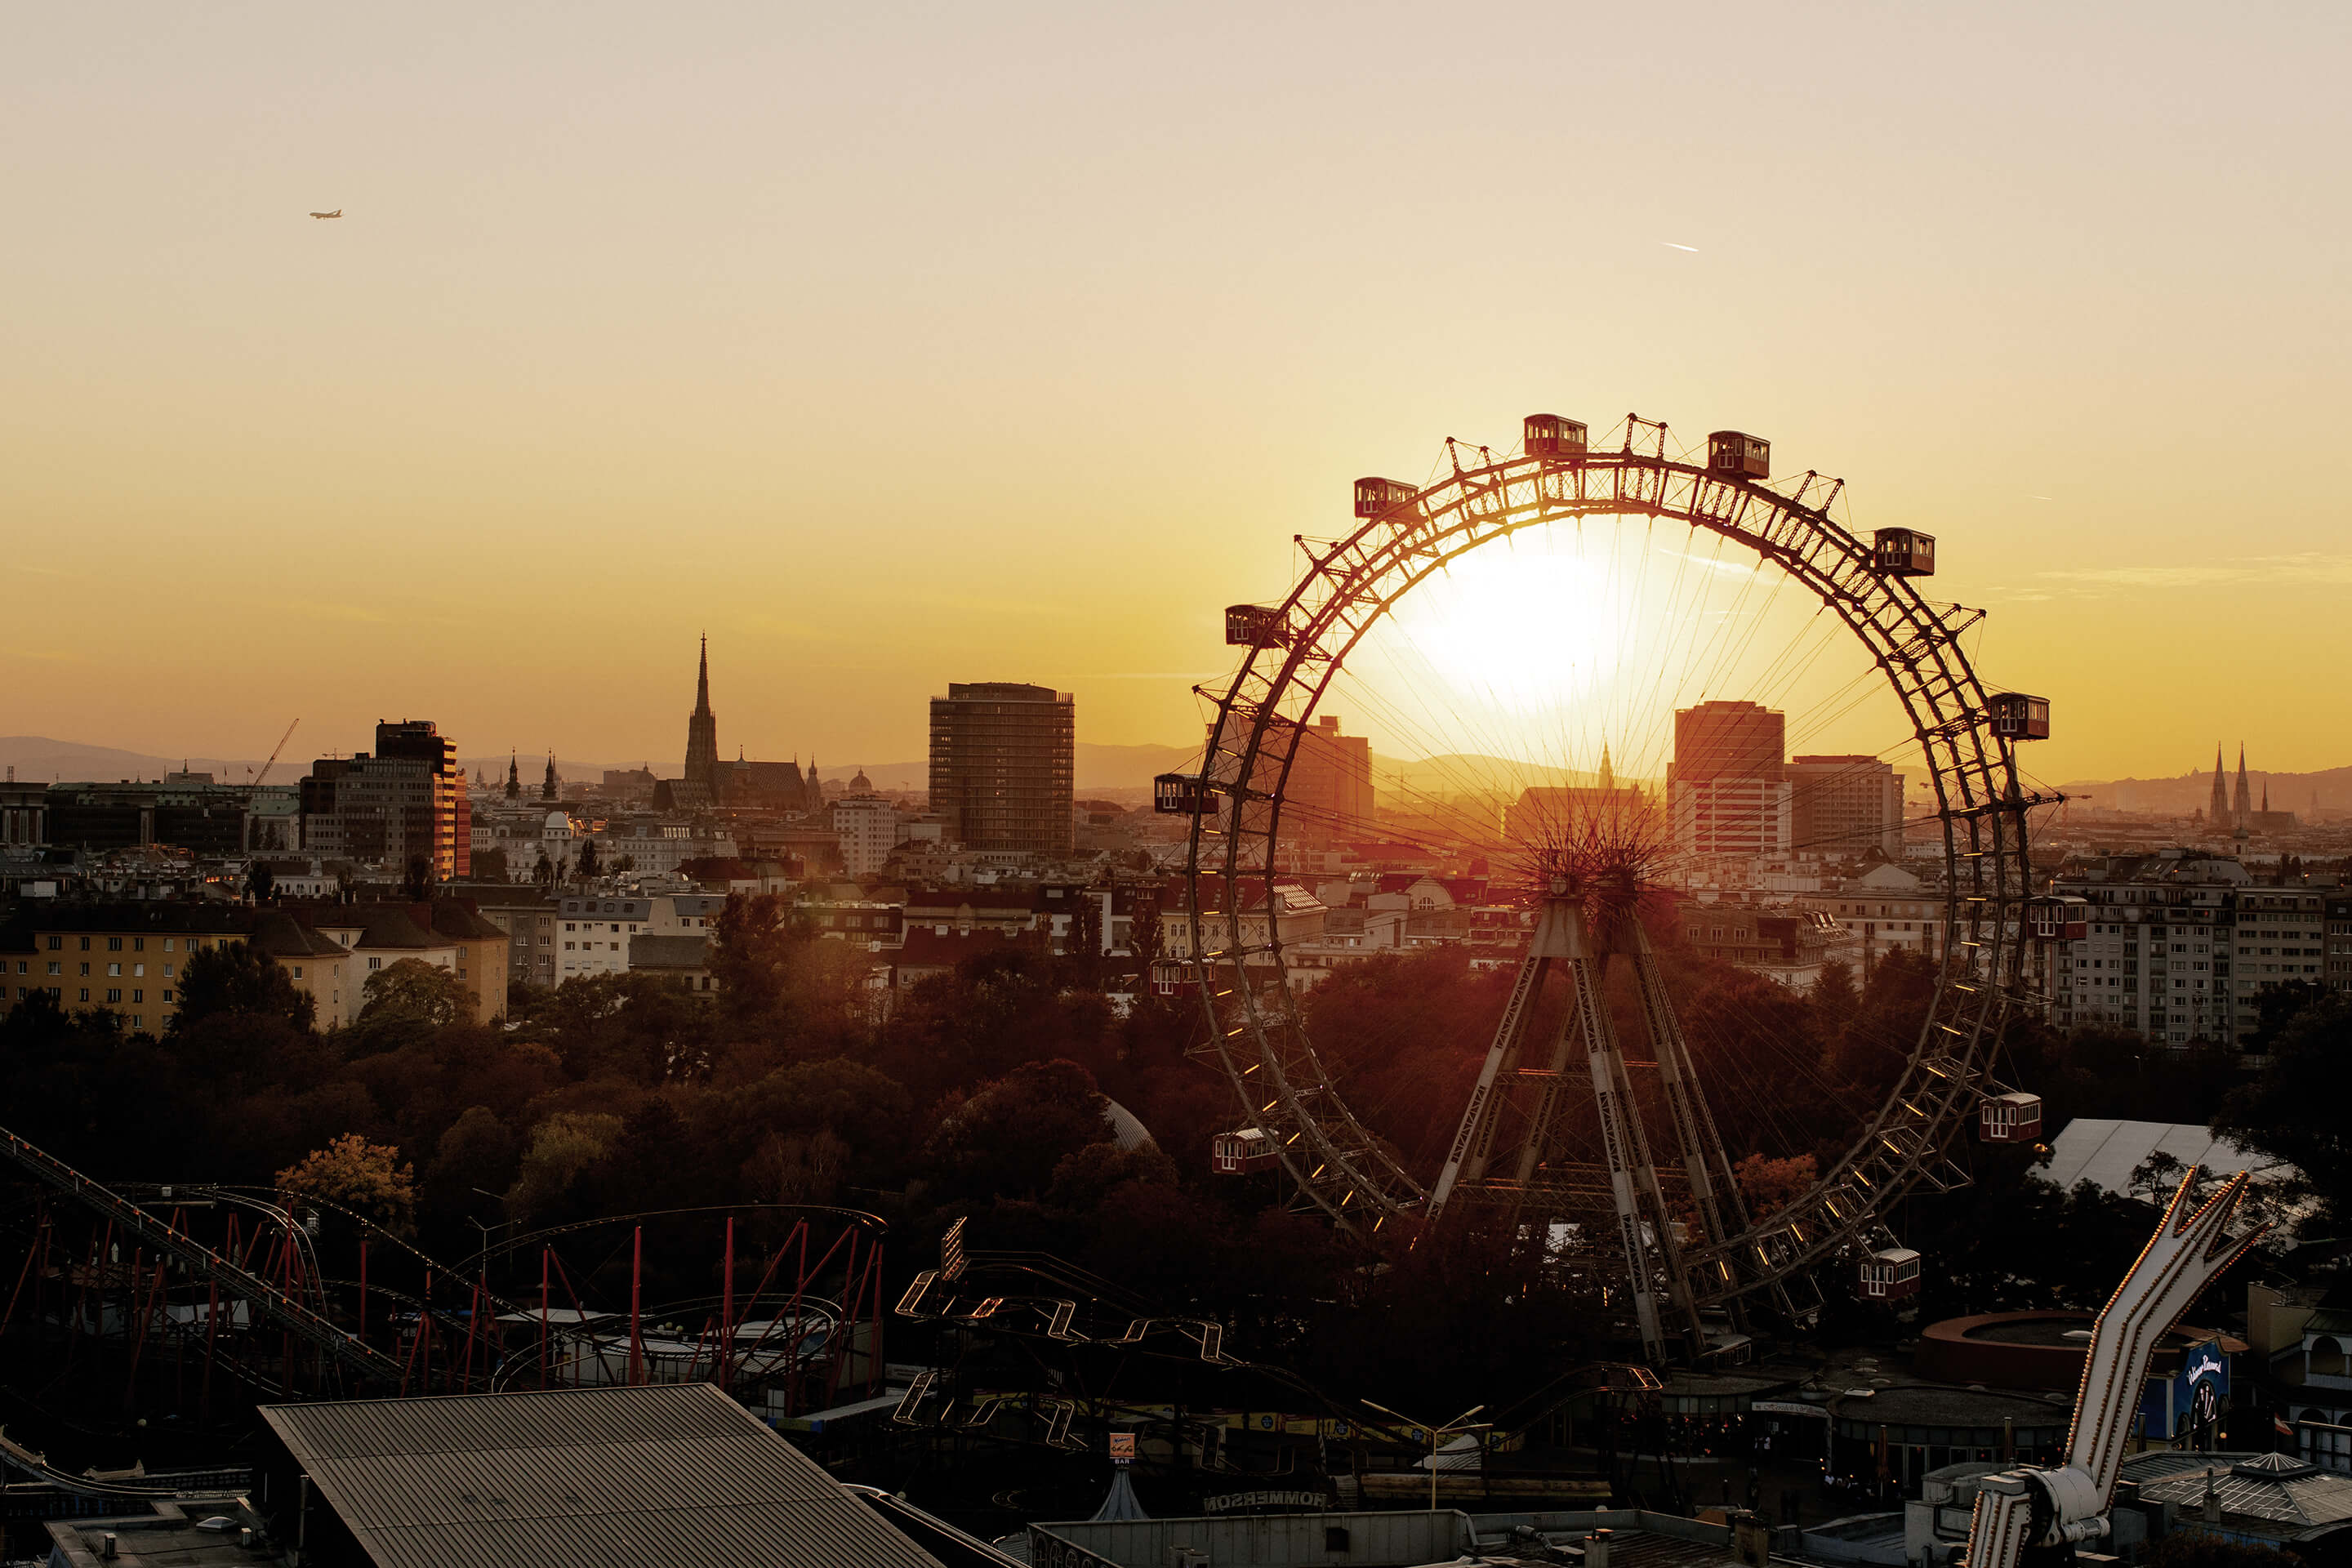 Foto: Wiener Prater beim Sonnenuntergang